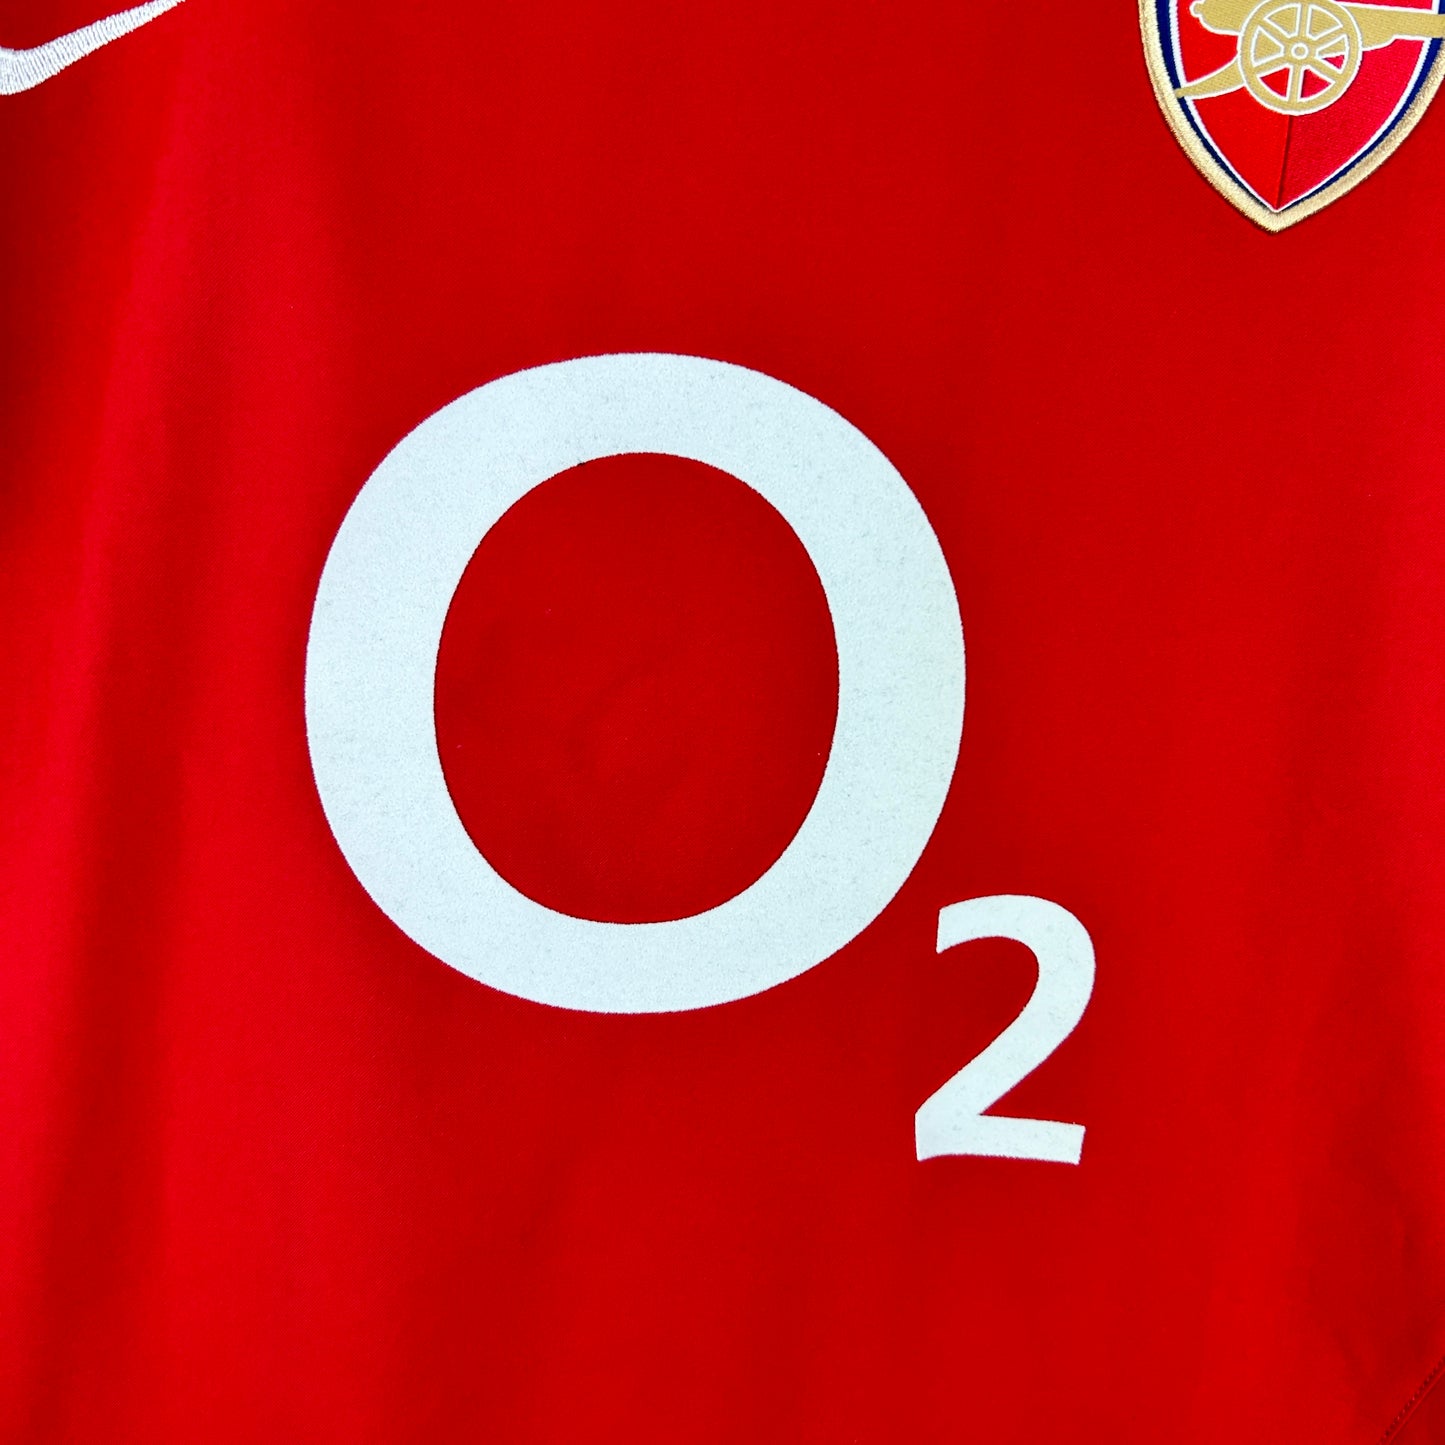 Arsenal 2003/2004 Match Worn Home Shirt - Edu 17